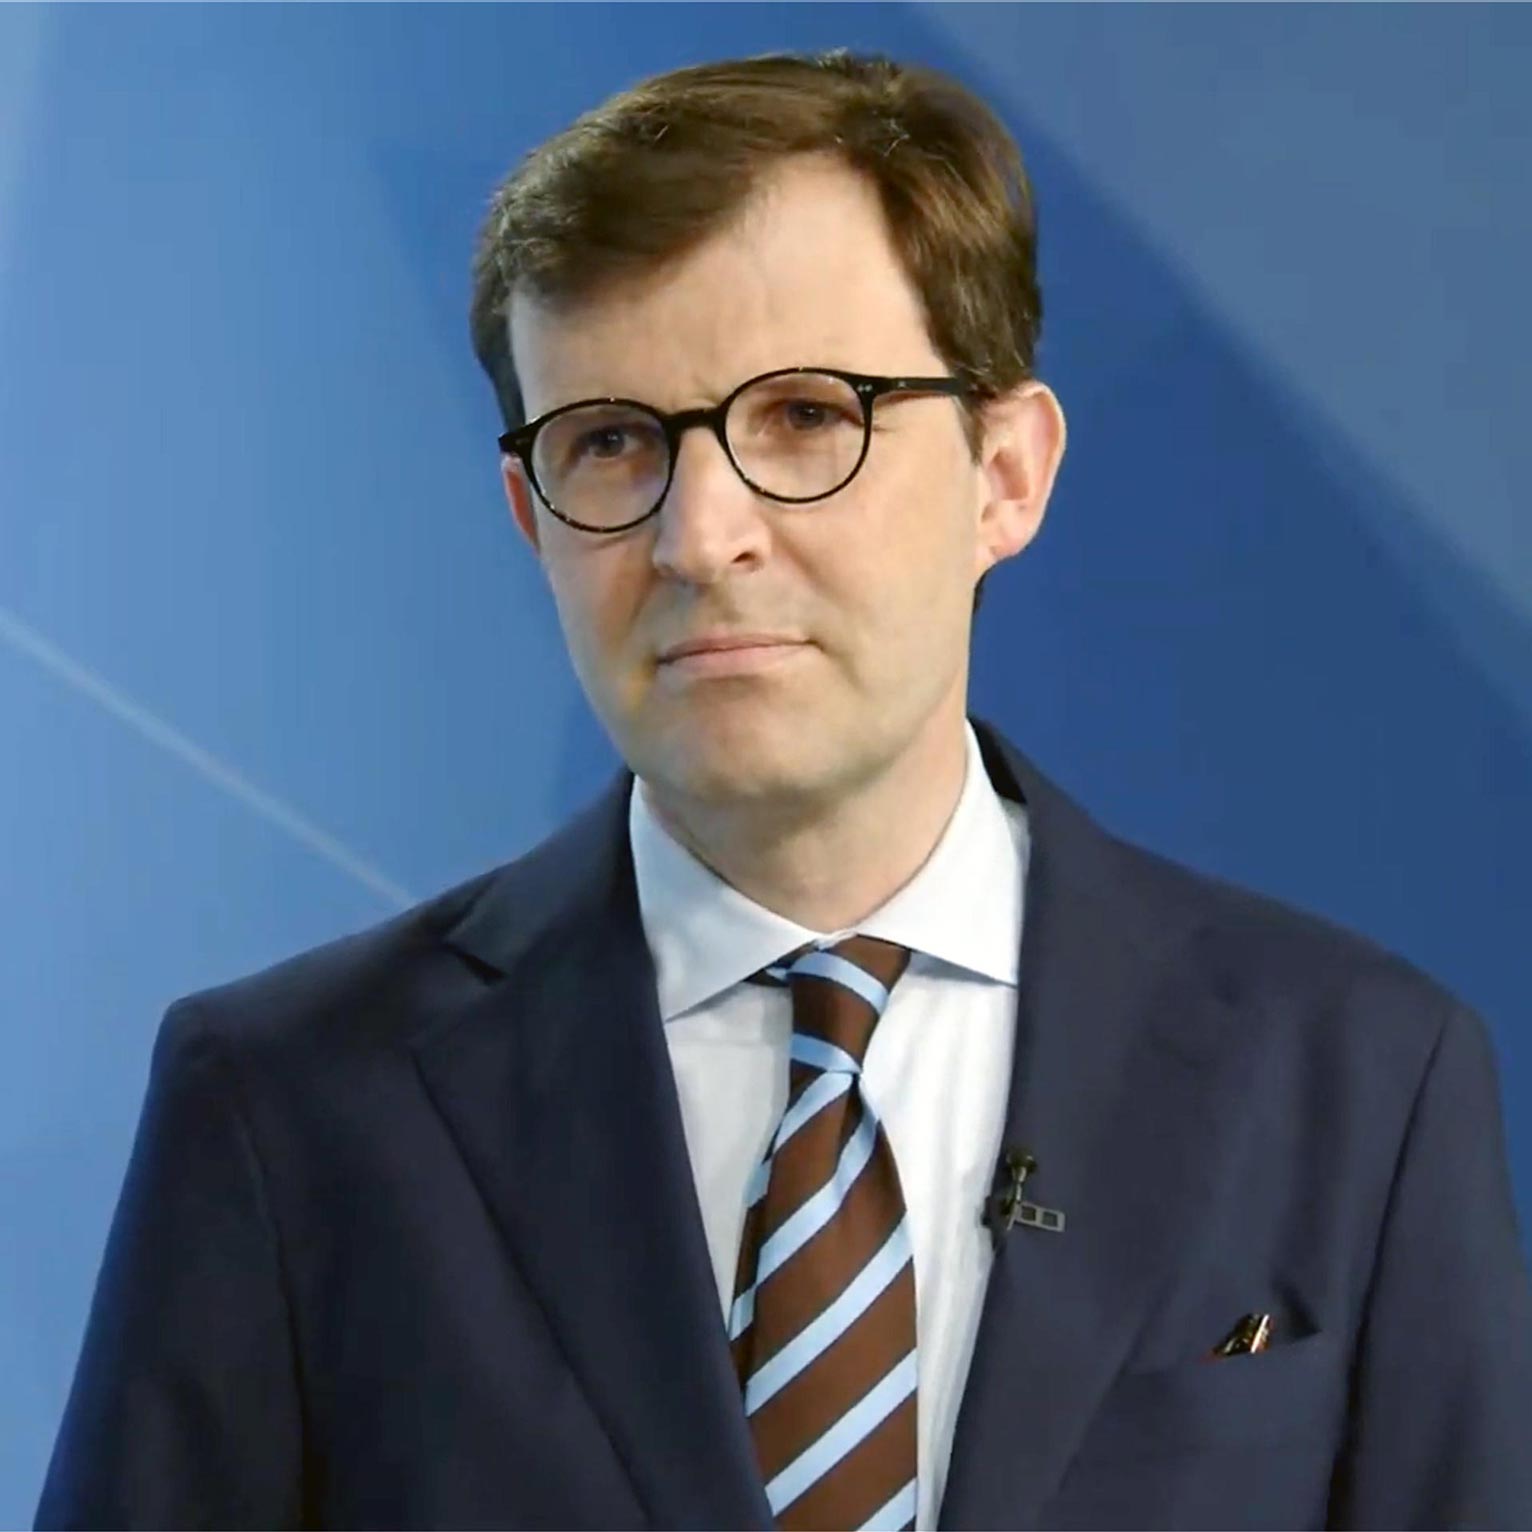 Christoph Schaltegger ist Professor für Politische Ökonomie an der Universität Luzern